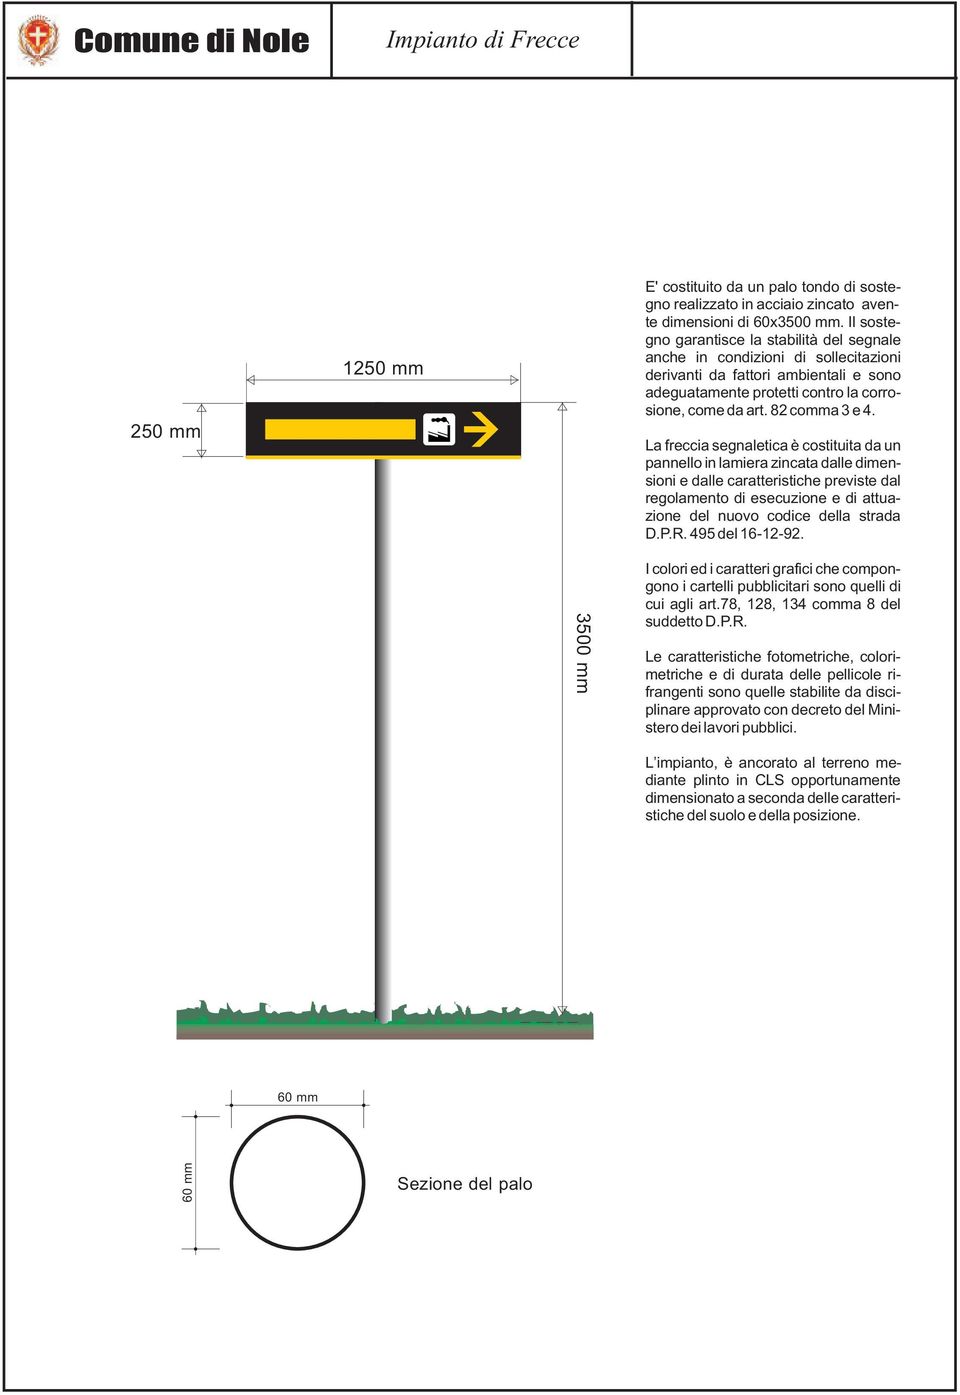 La freccia segnaletica è costituita da un pannello in lamiera zincata dalle dimensioni e dalle caratteristiche previste dal regolamento di esecuzione e di attuazione del nuovo codice della strada D.P.